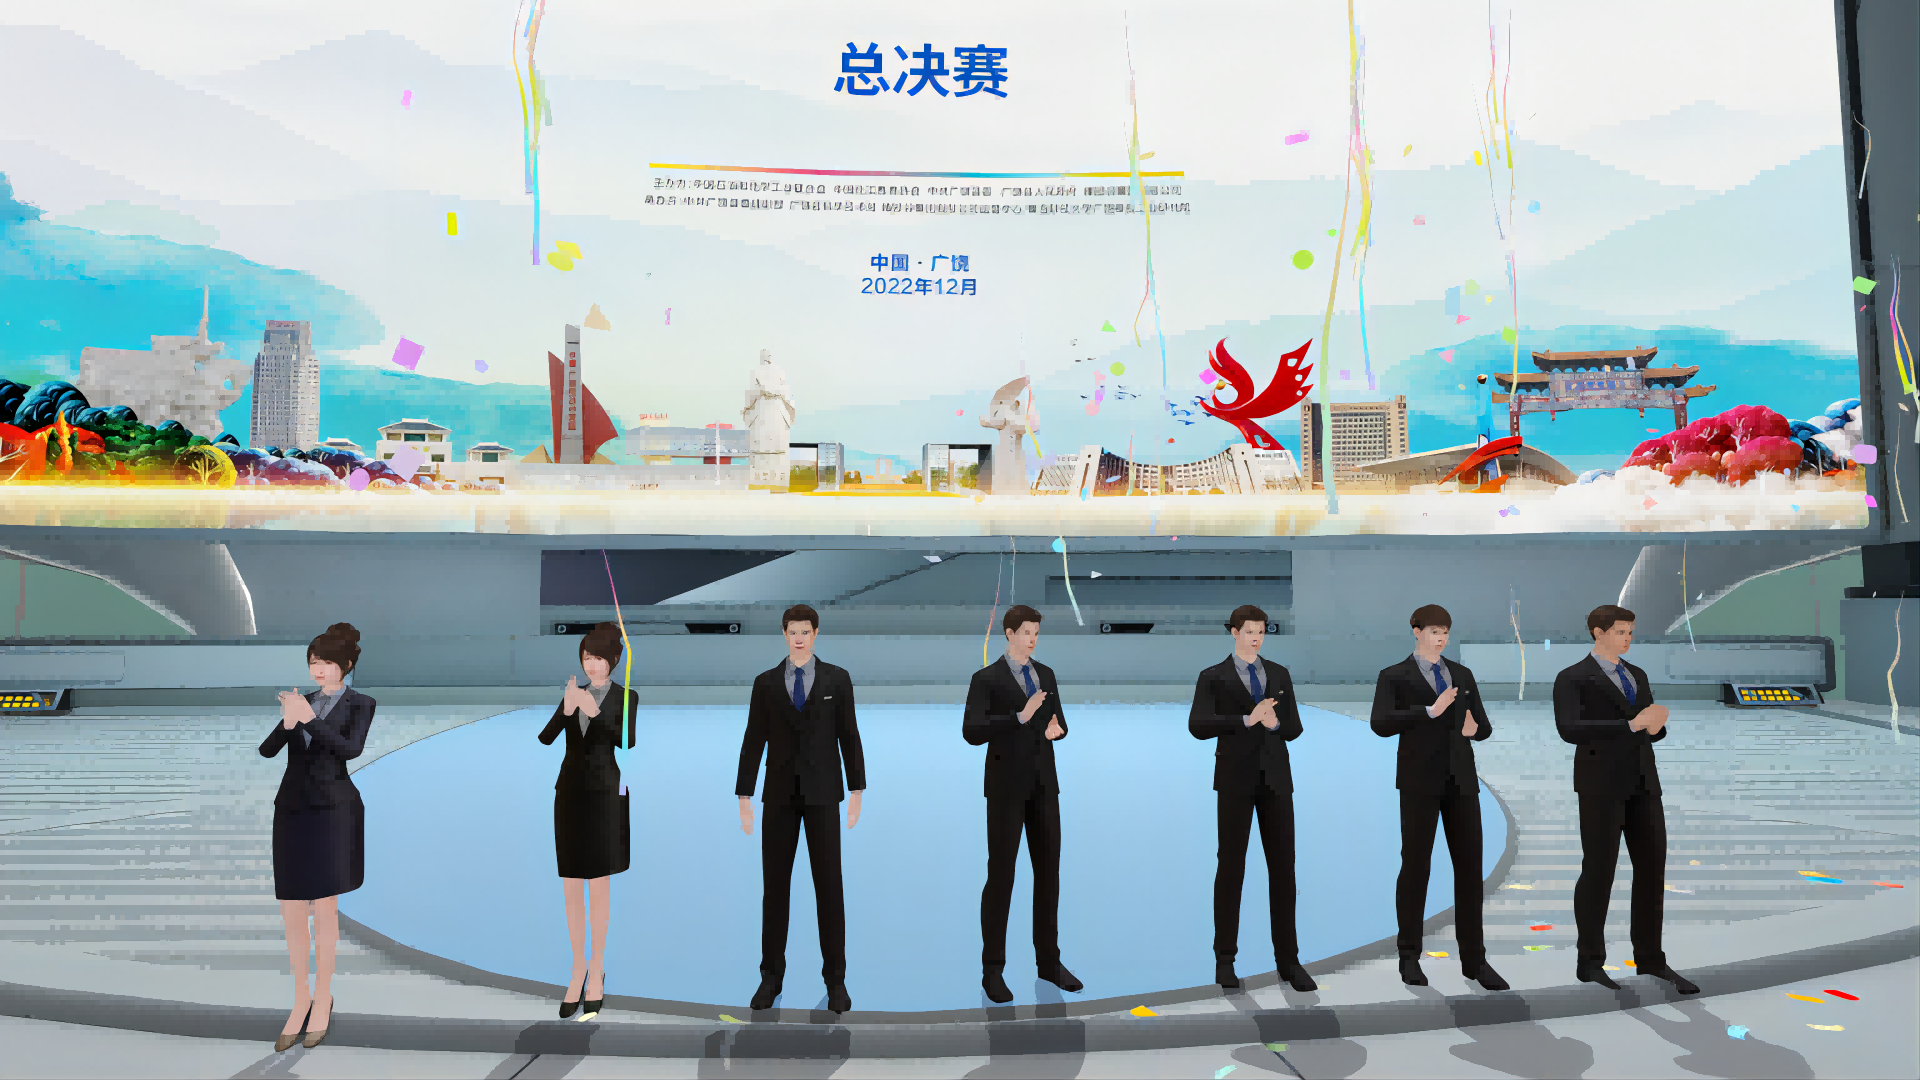 图片展示了一群穿着正装的动漫风格人物站在虚拟演讲台上，背景有现代城市元素和飘落的彩带。